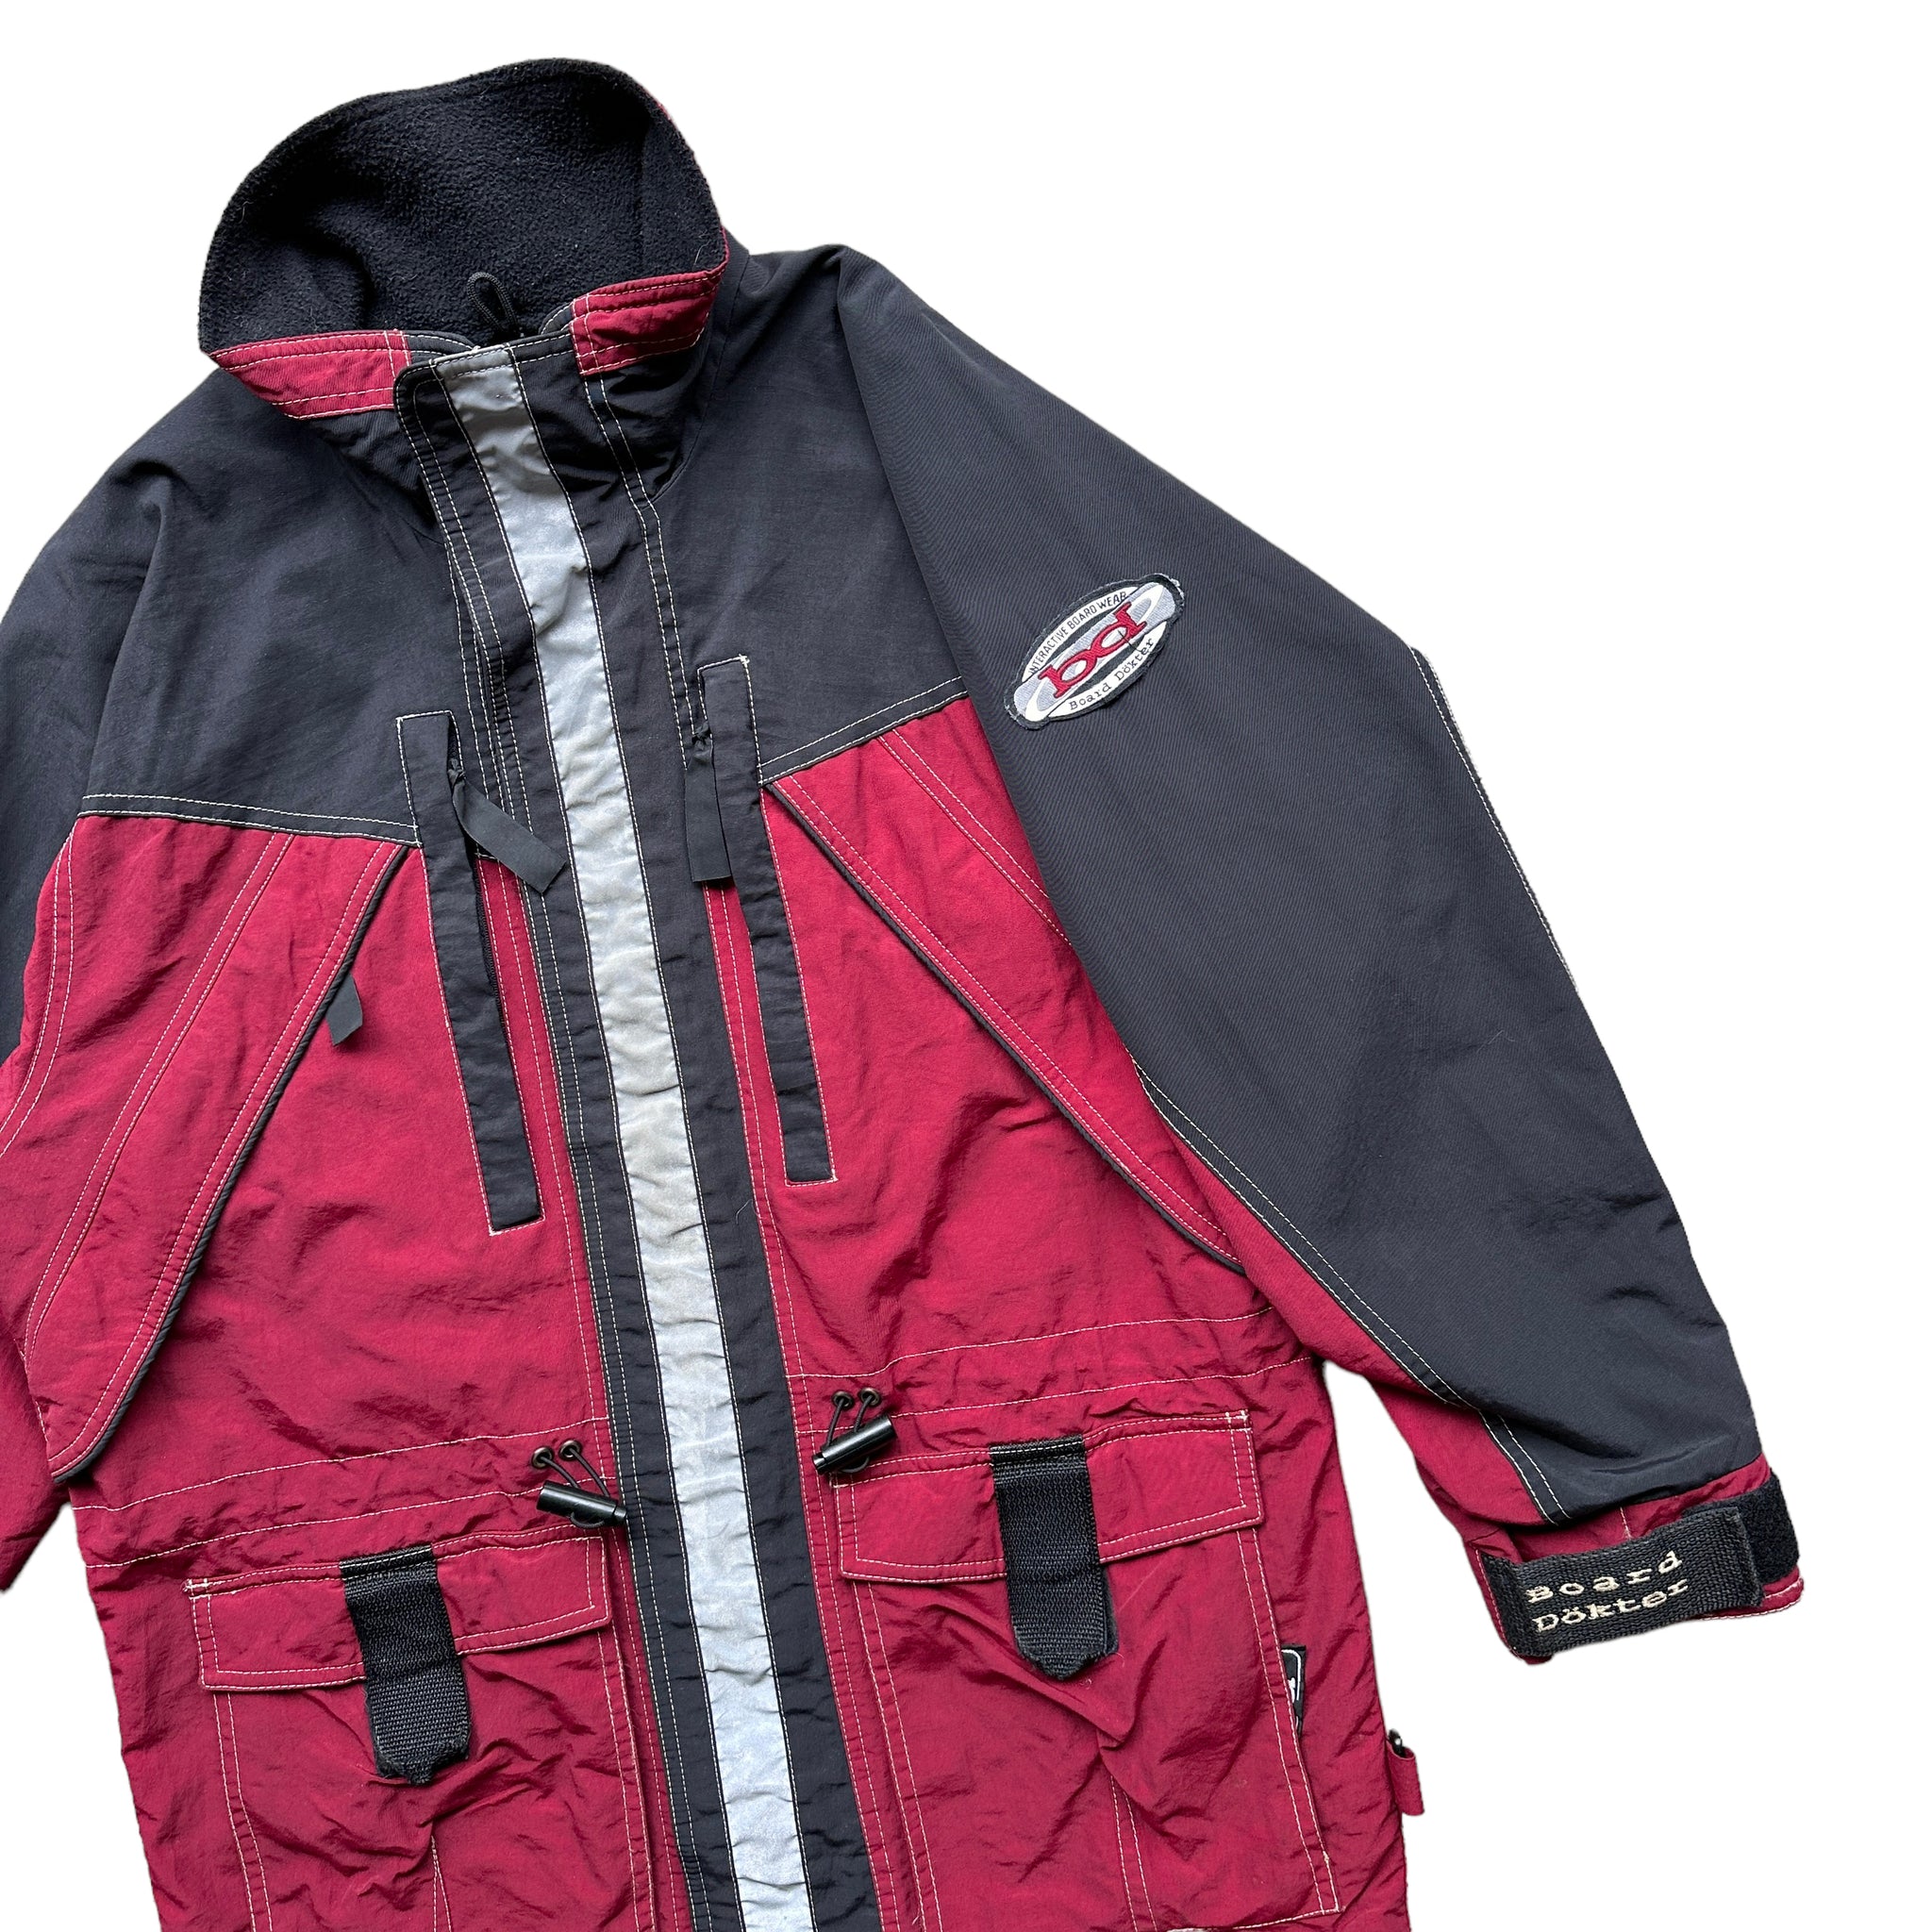 90s Board dokter snowboard jacket medium fit – Vintage Sponsor